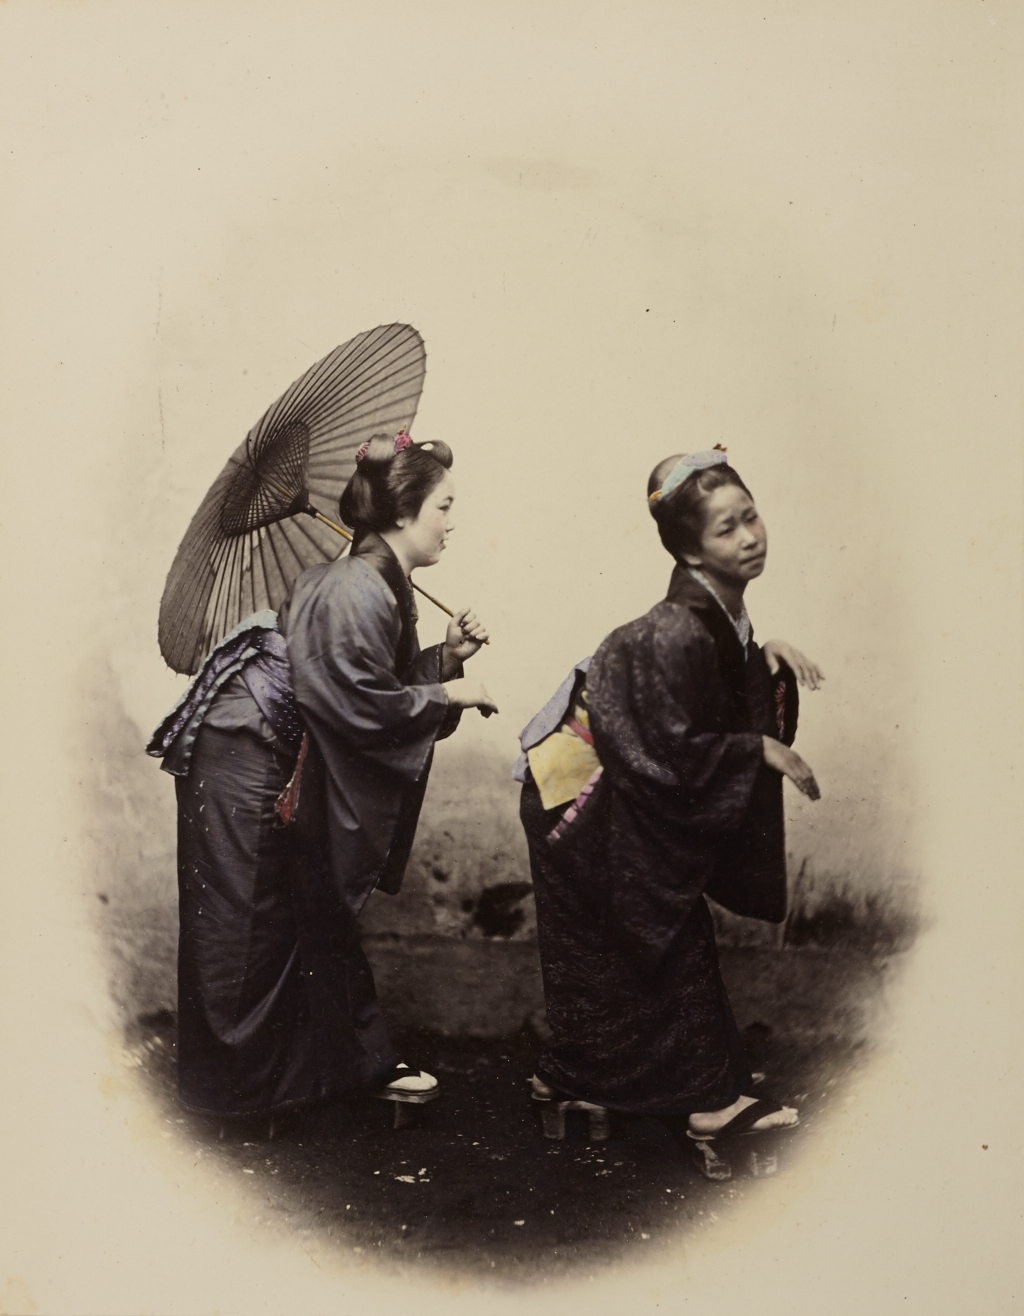 FELICE BEATO (1832-1909) Kendō-Fechter / Kendō-Fencers & Geishas, Japan 1860s